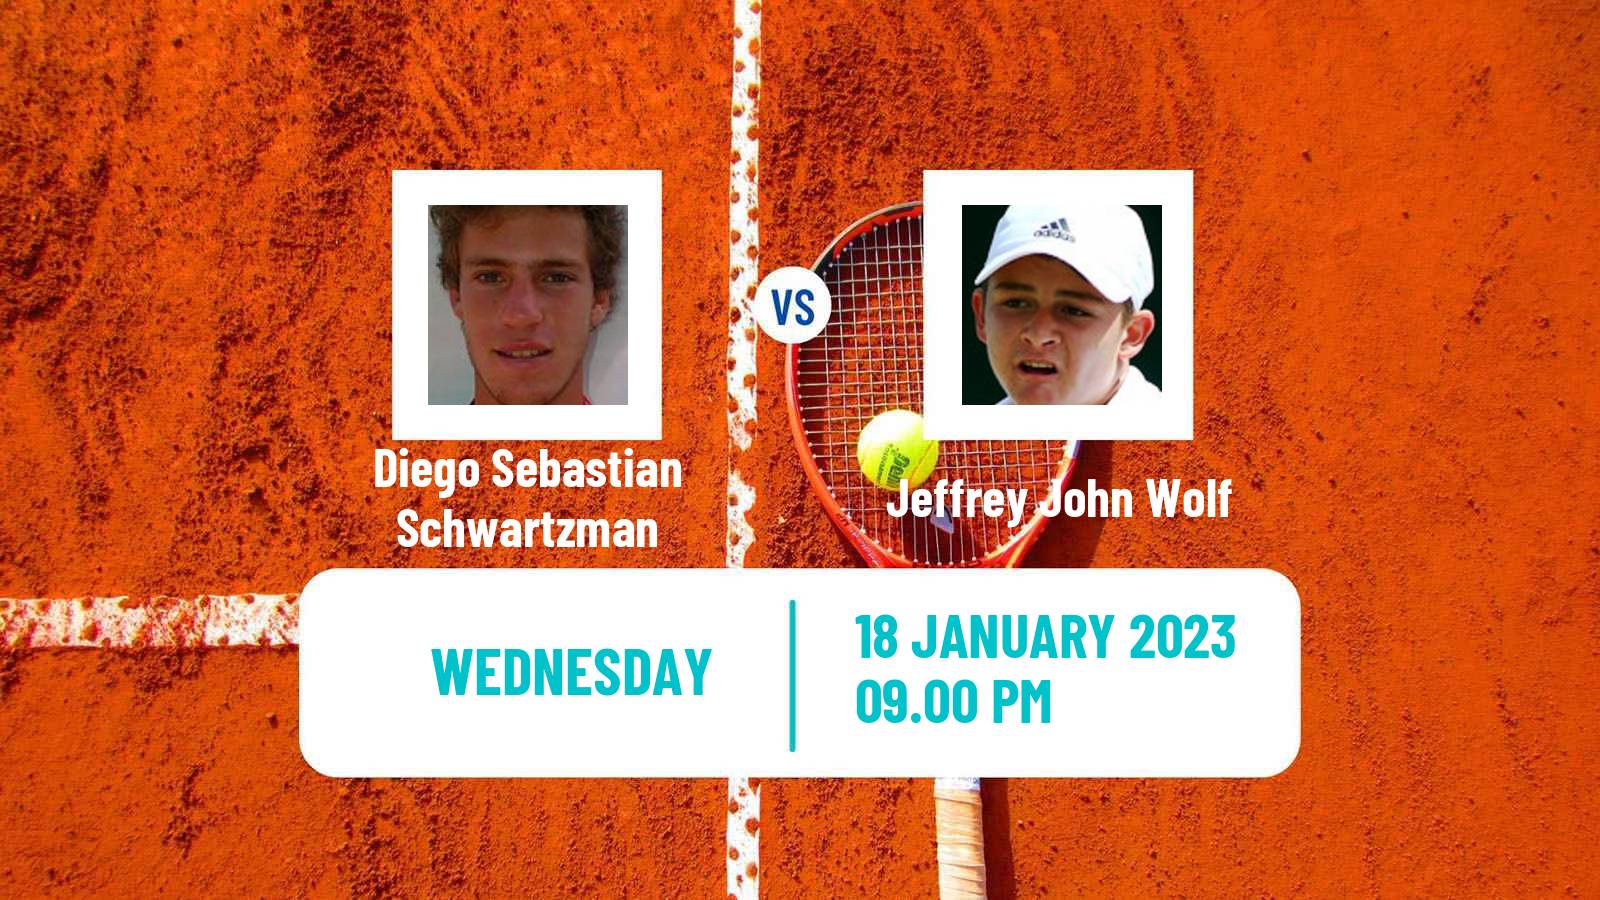 Tennis ATP Australian Open Diego Sebastian Schwartzman - Jeffrey John Wolf